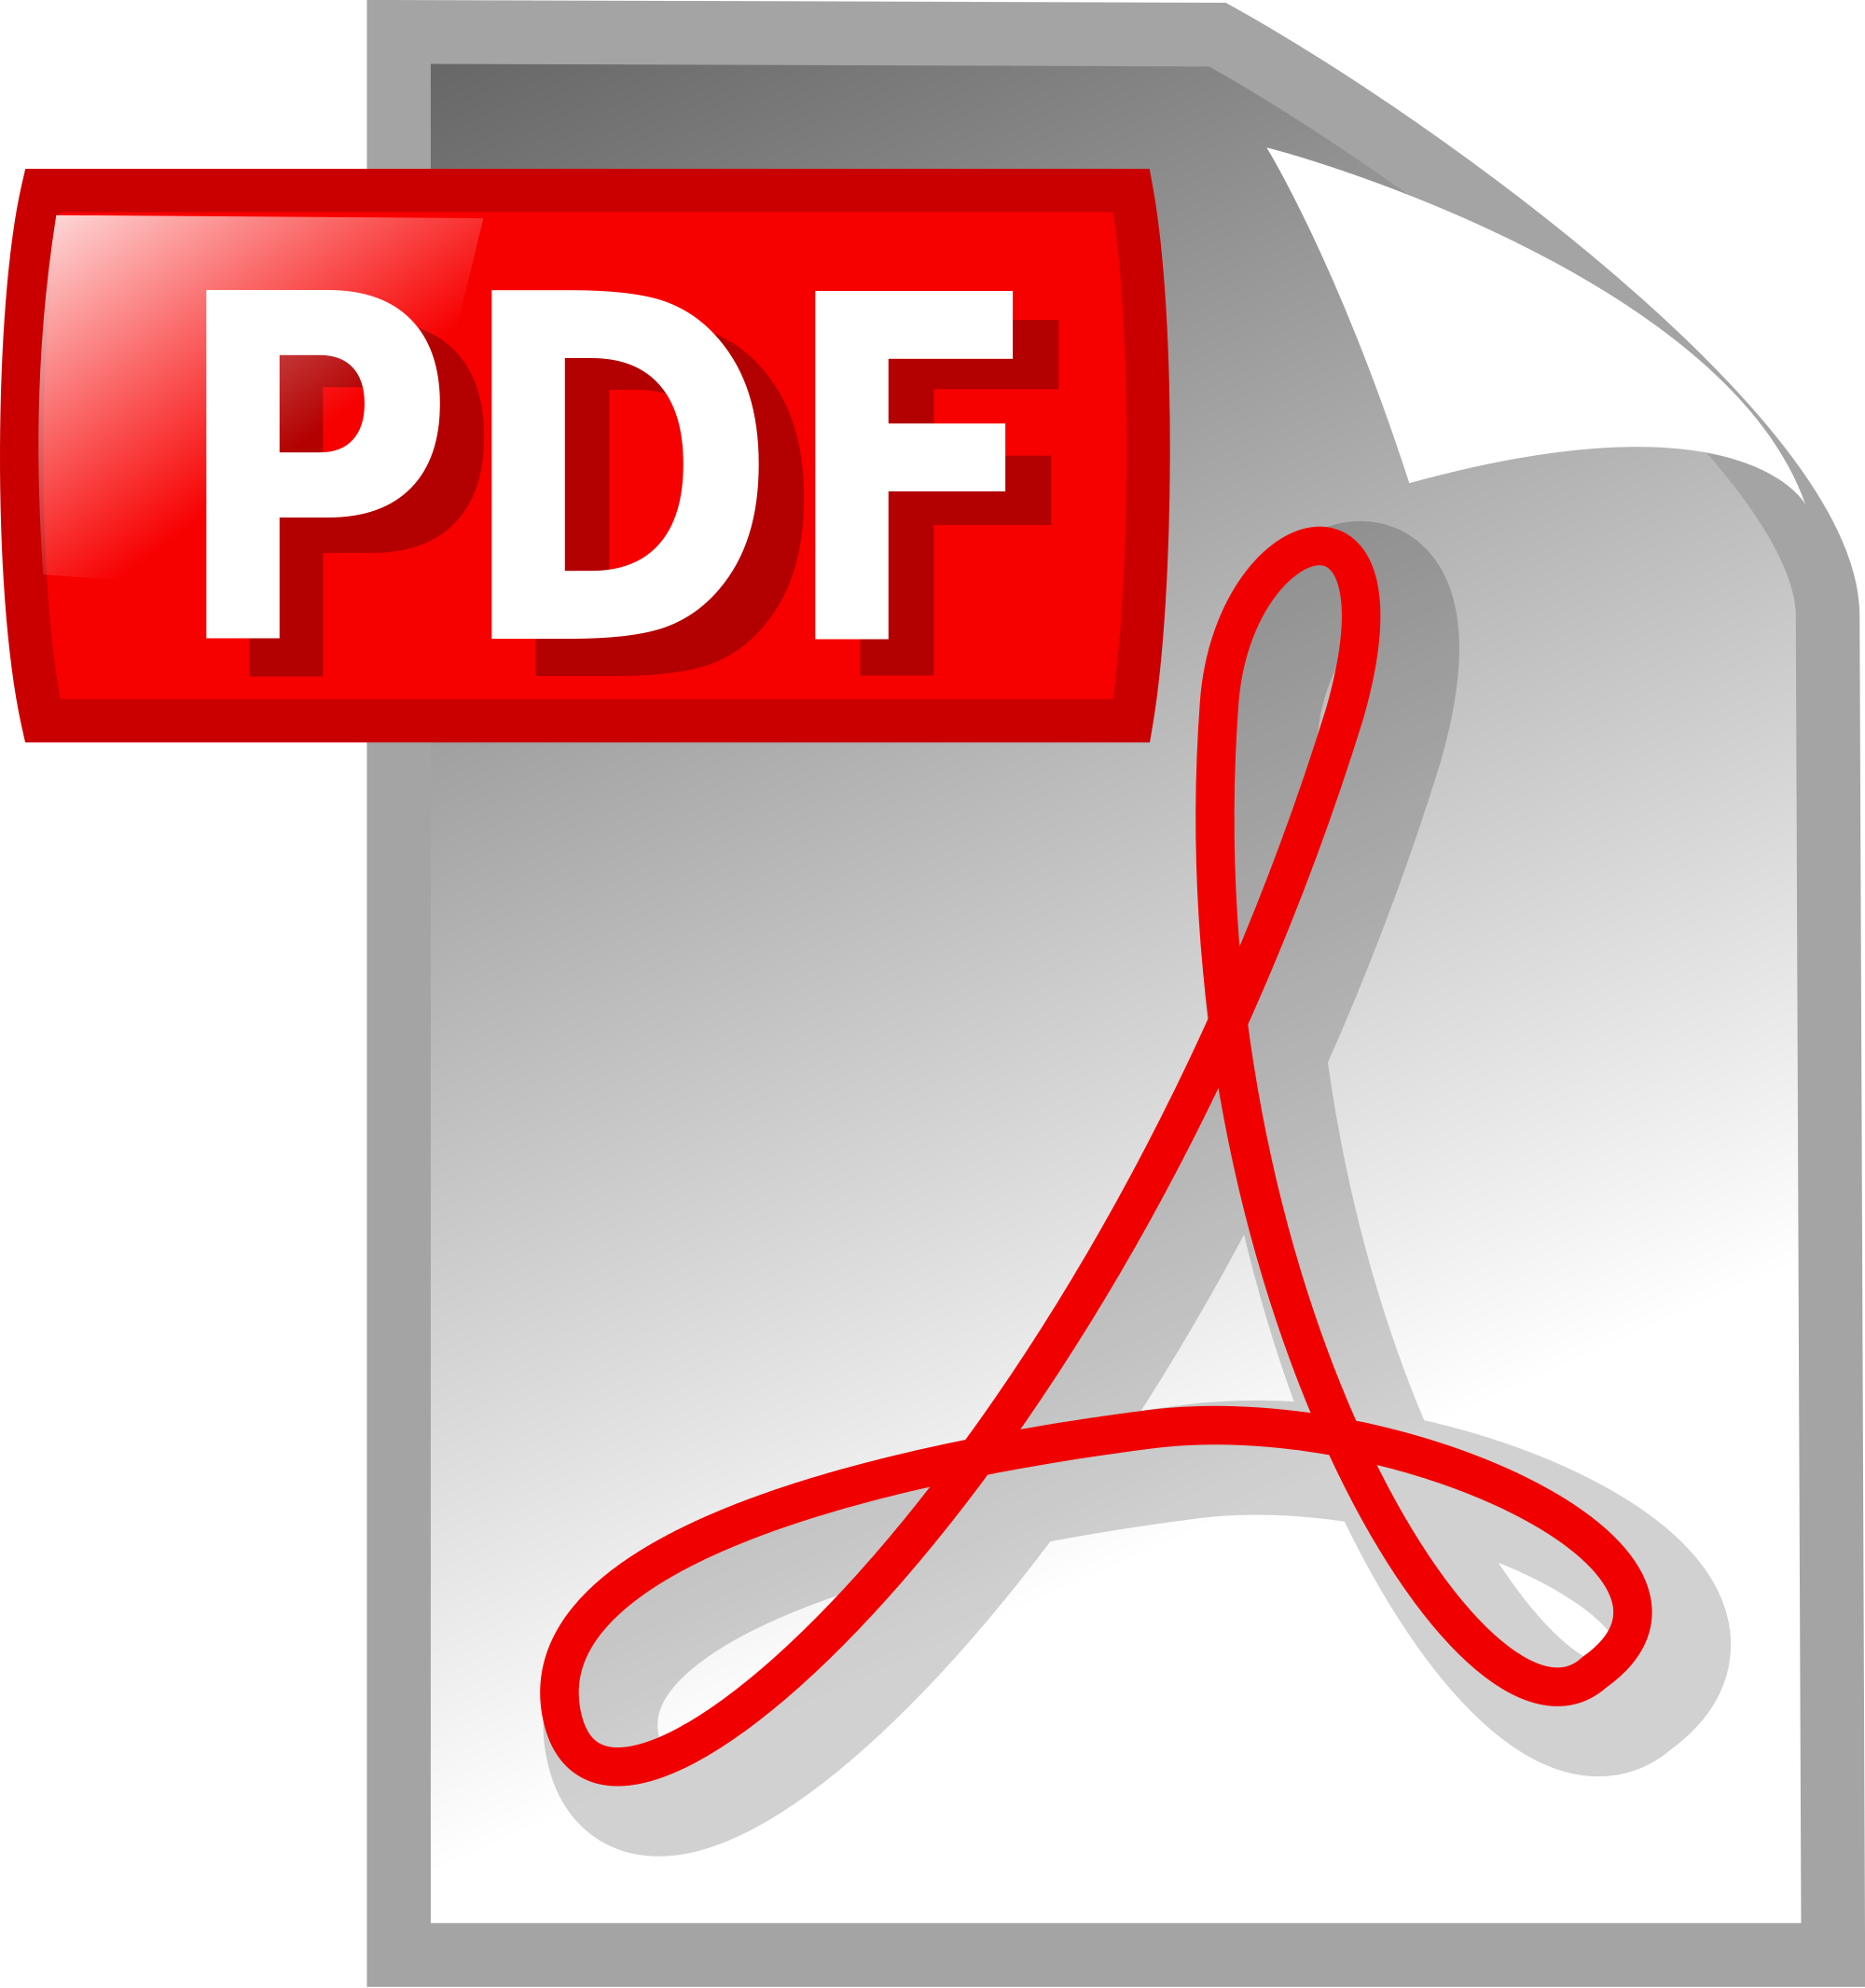 Pdf icon. Пдф файл. Значок pdf. Пдф картинки. Пиктограмма pdf.